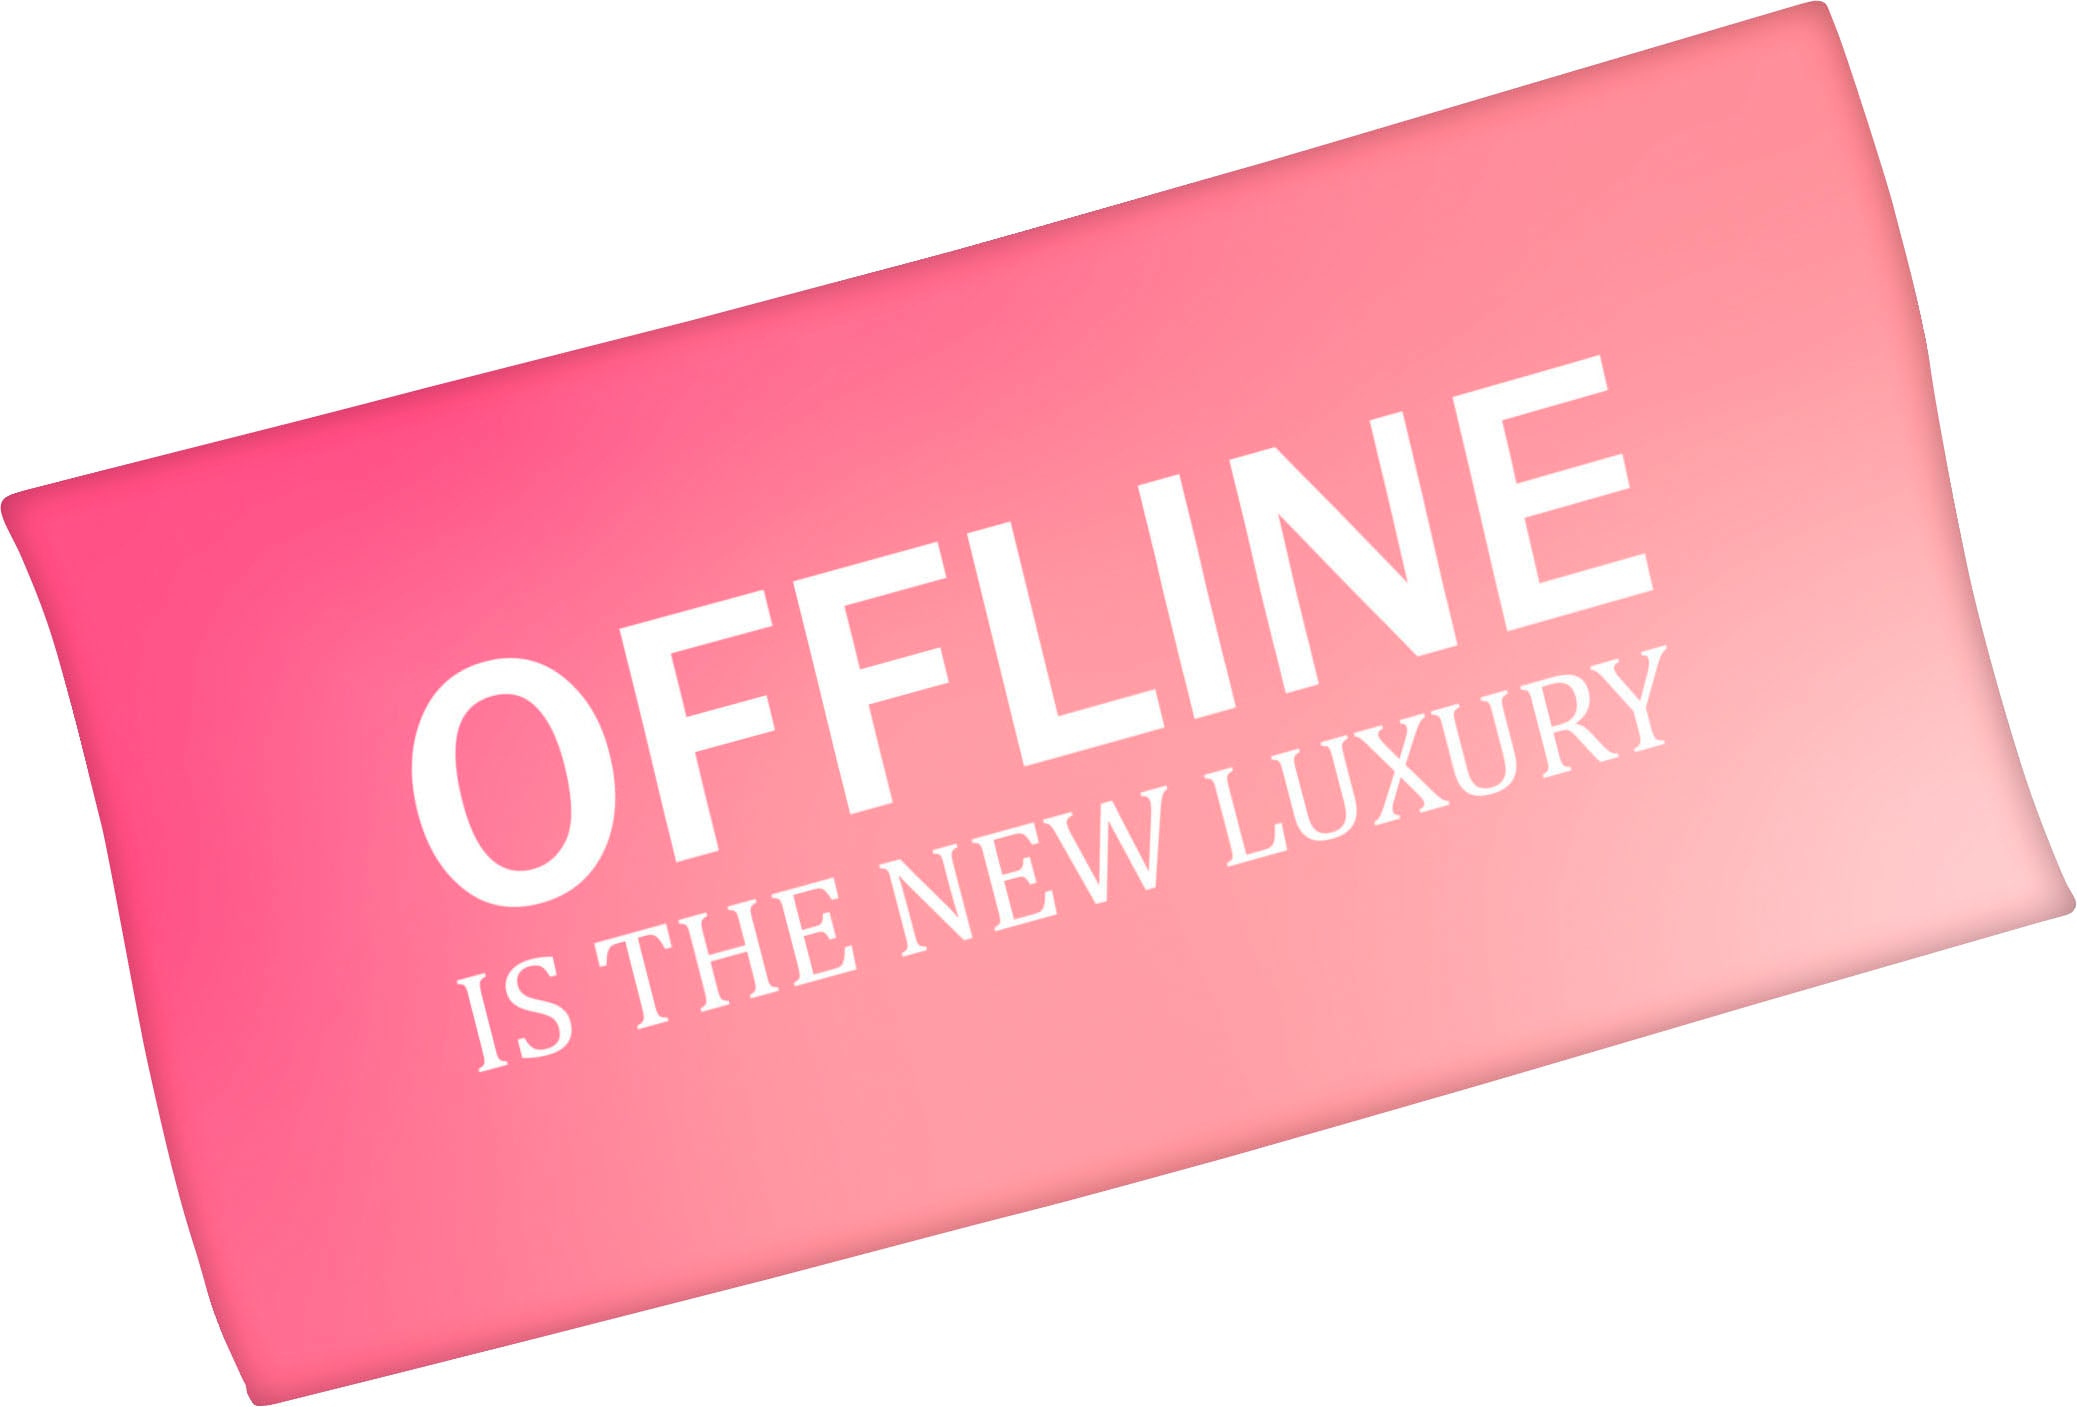 Badetuch »Offline is the new luxury«, (1 St.), mit lustigem Spruch